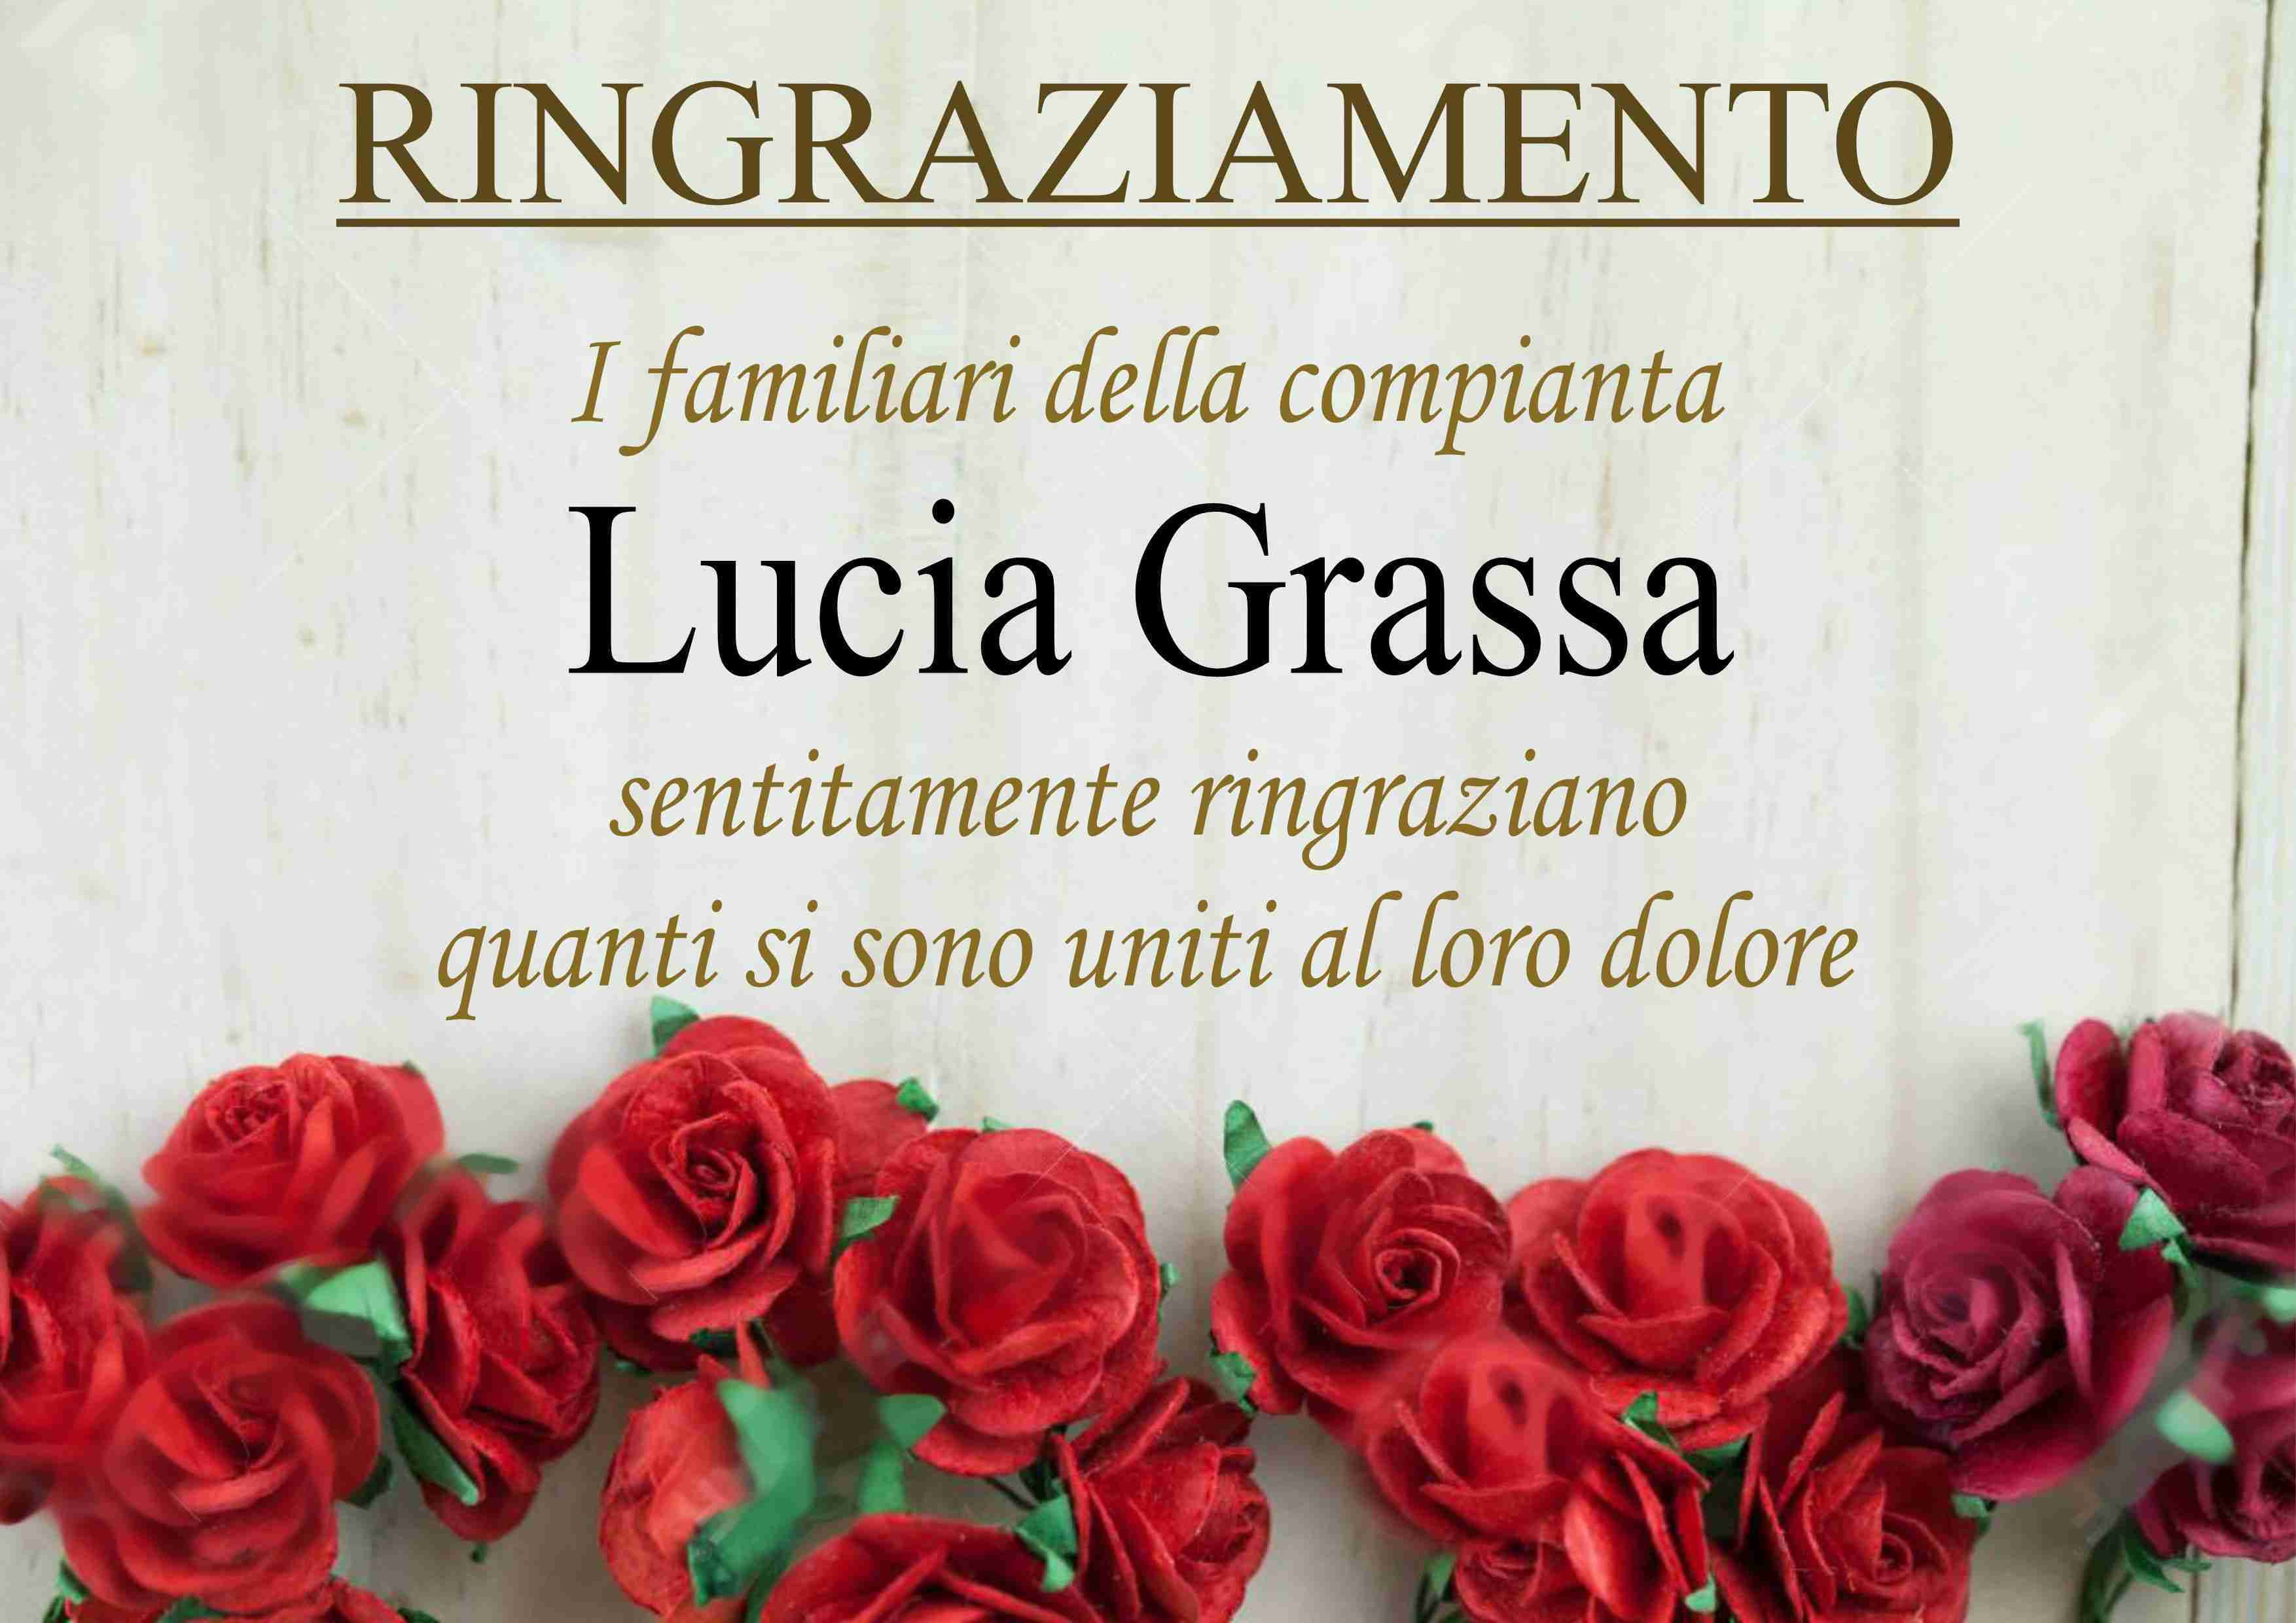 Lucia Grassa